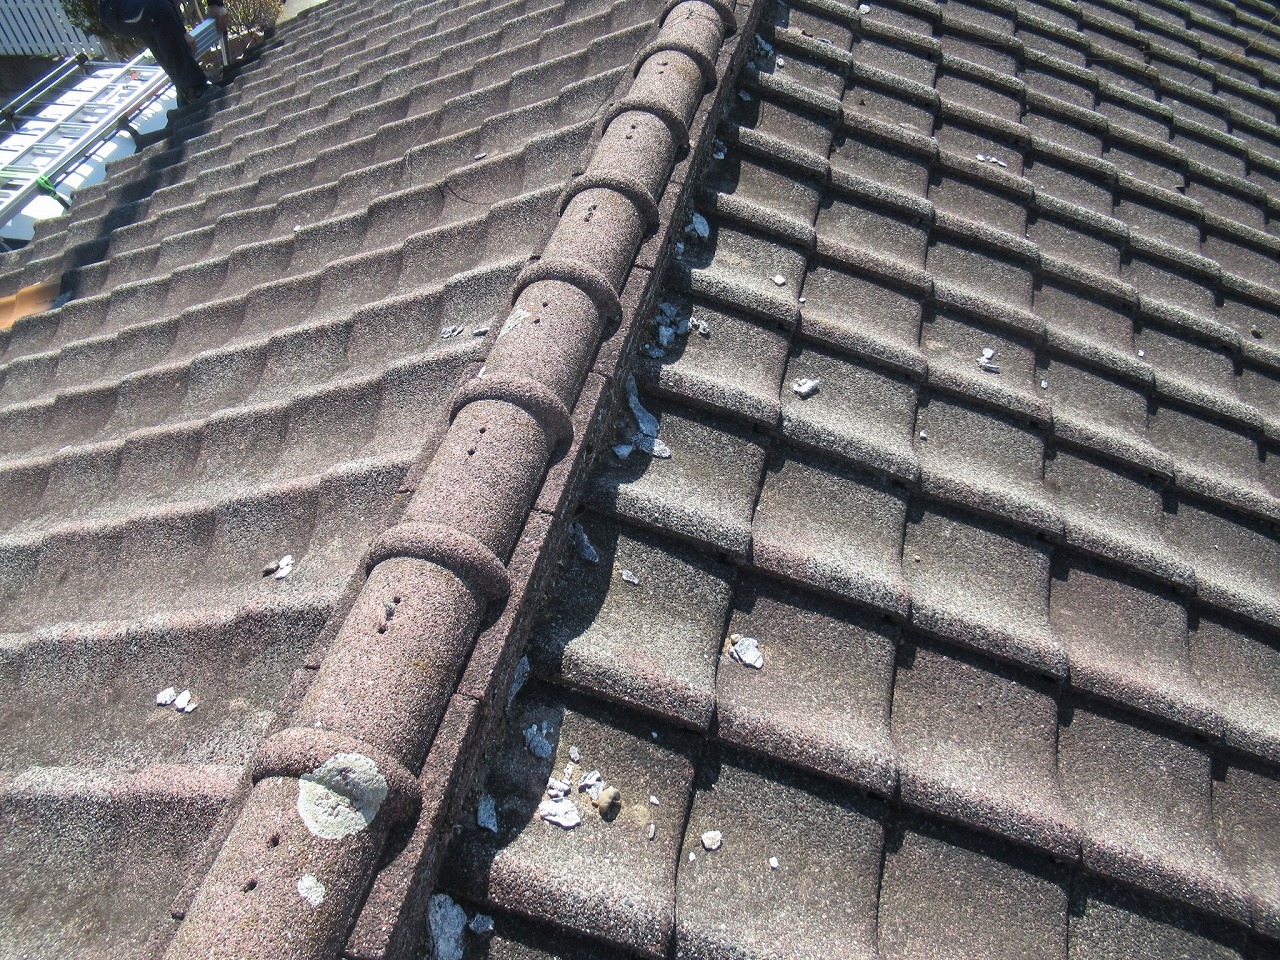 山梨市でセメント瓦屋根の漆喰の剥がれの調査を行いました